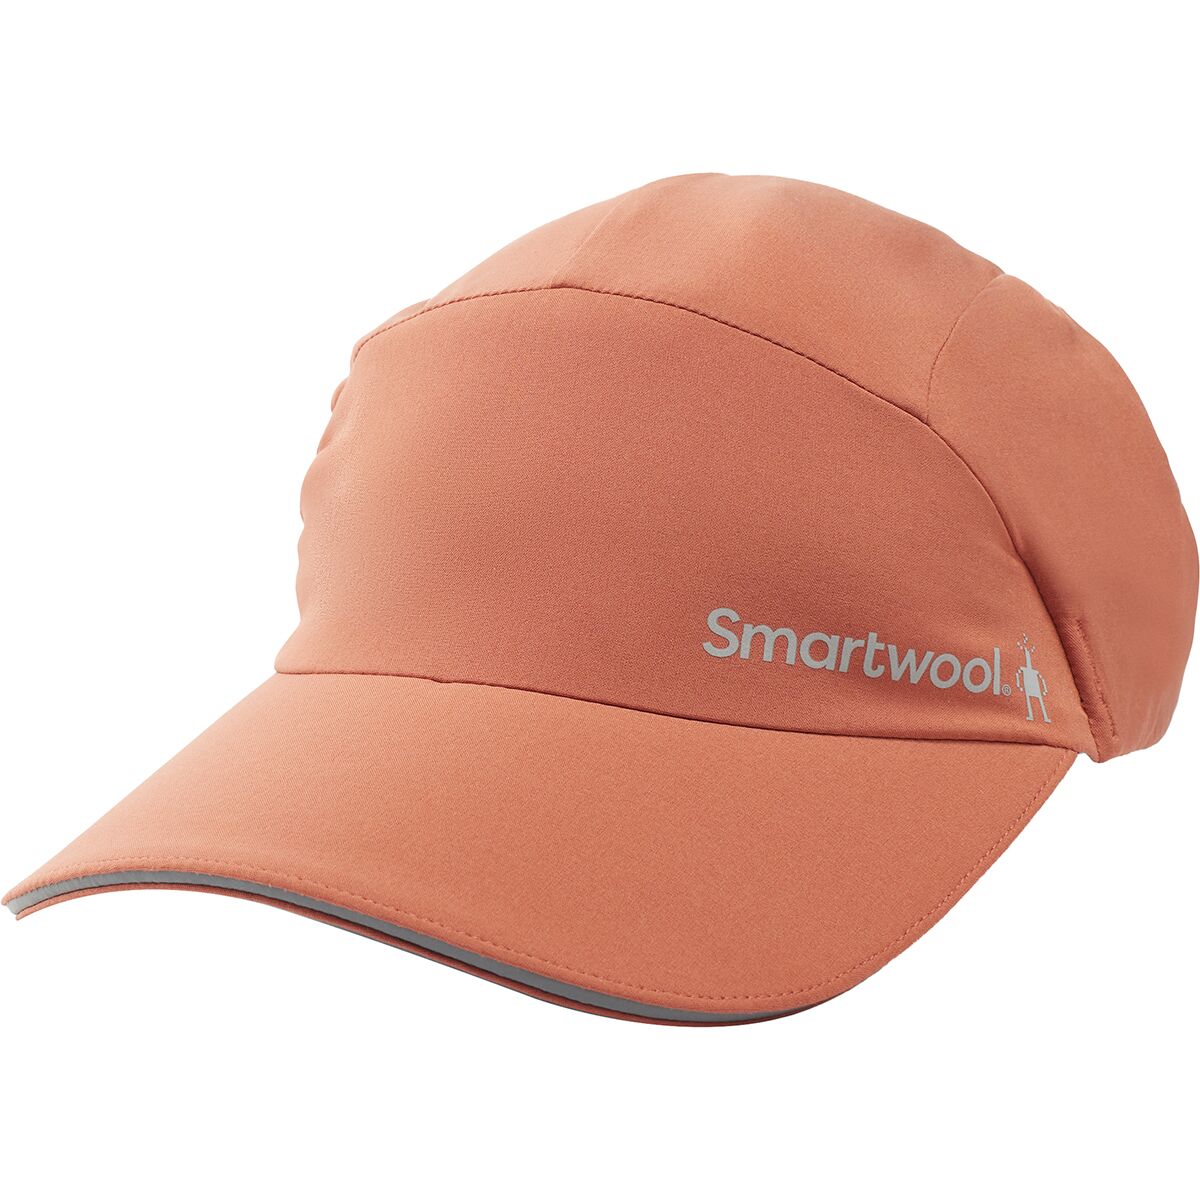 Smartwool Go Far Feel Good Runner's Cap